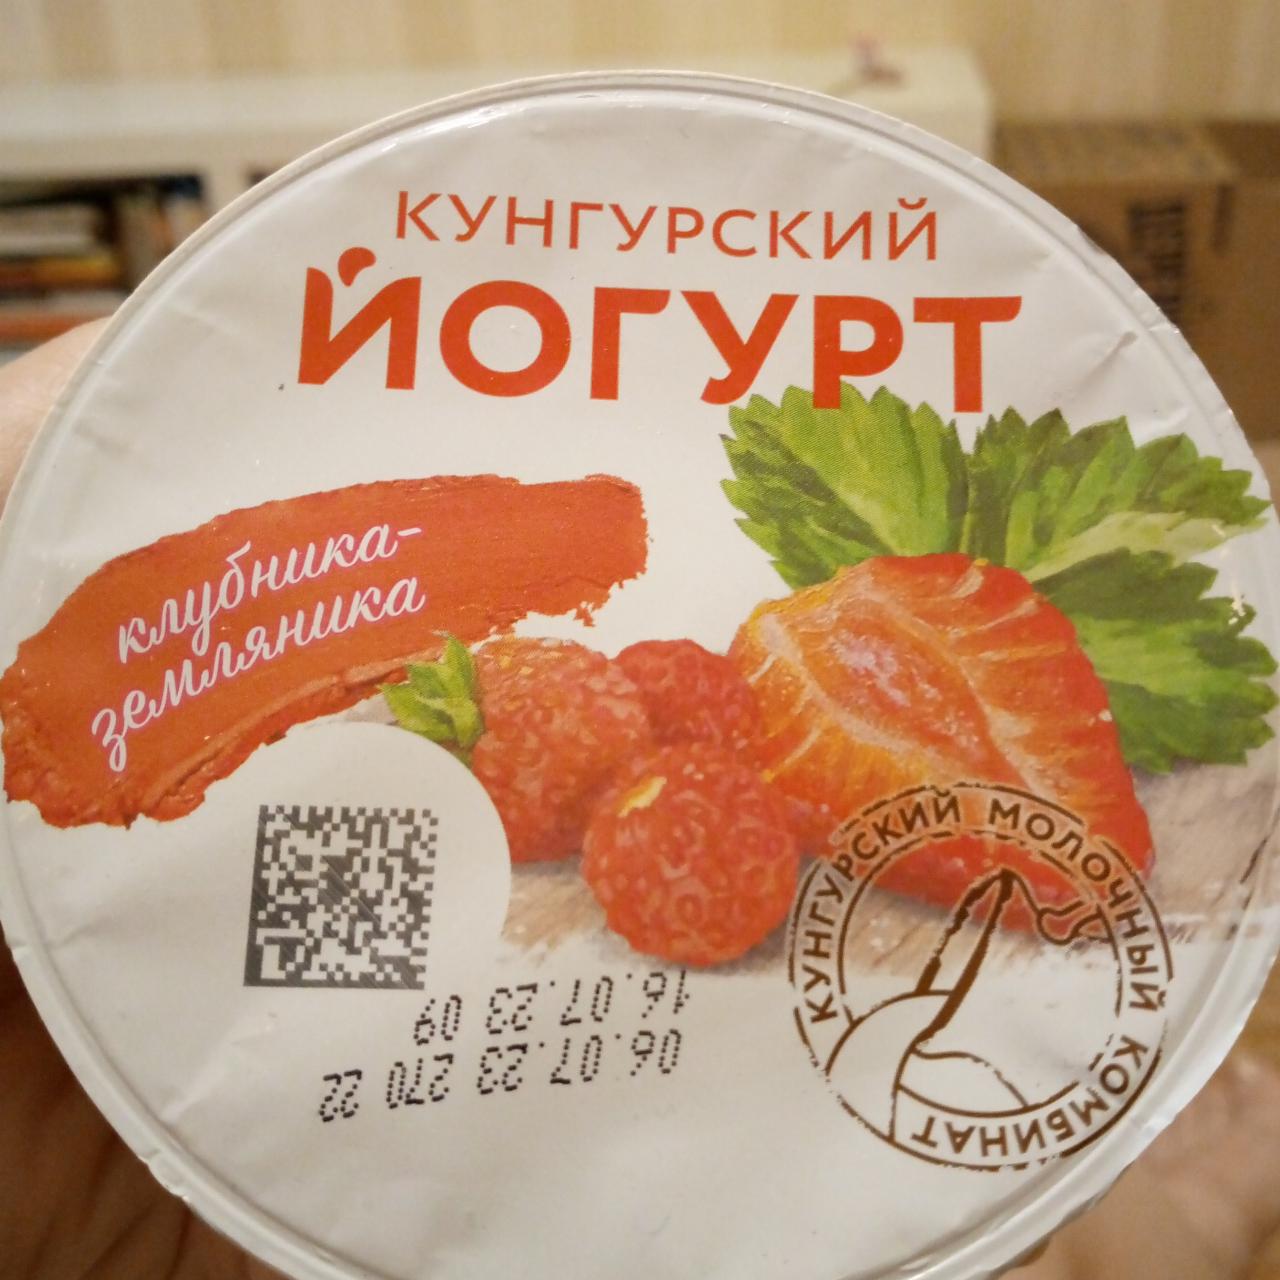 Фото - йогурт 1.5% с клубникой Кунгурский